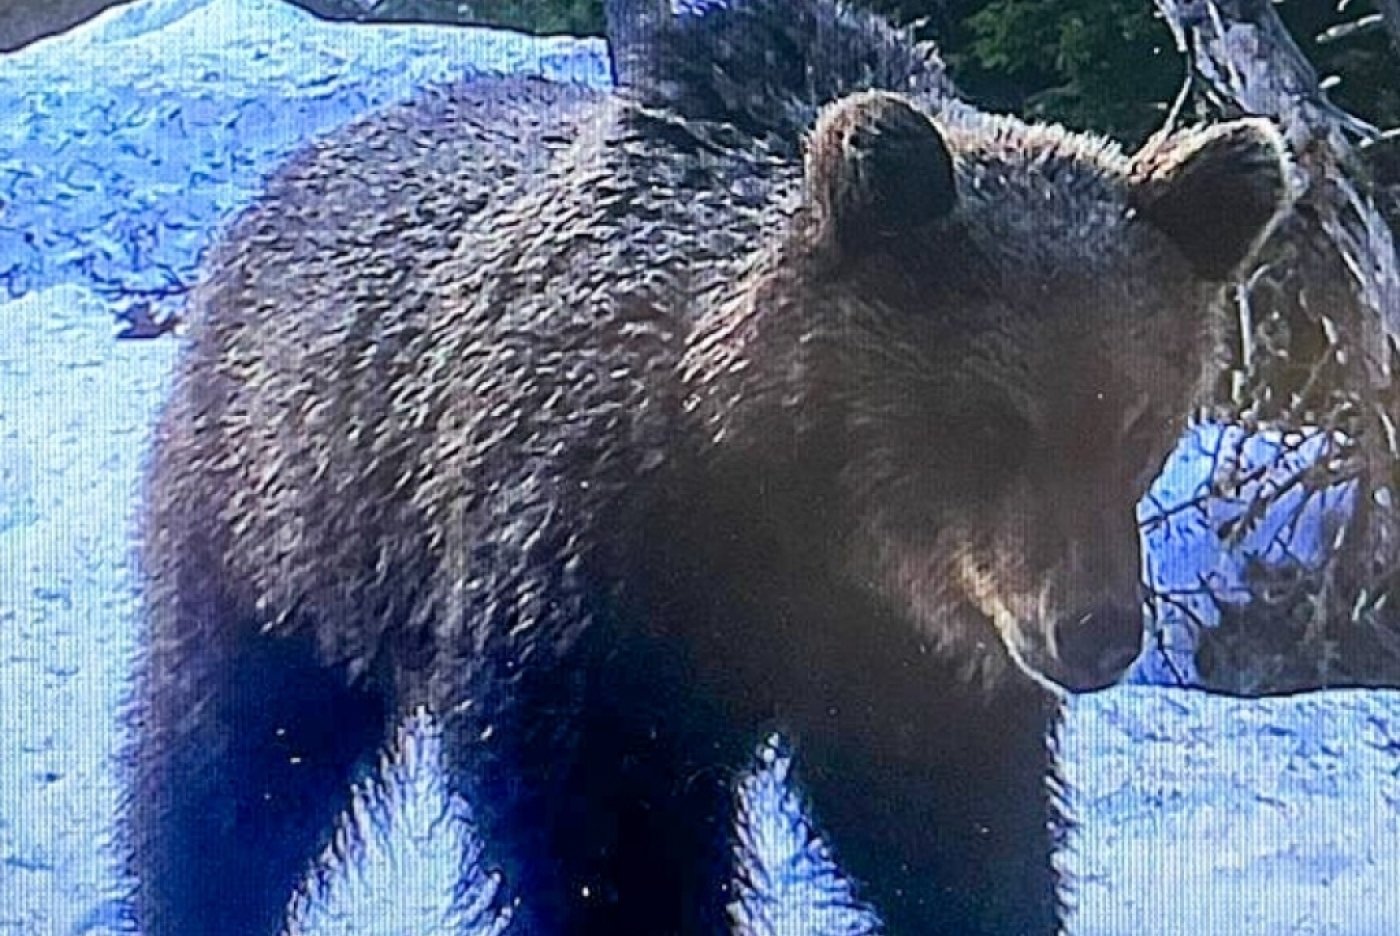 Le jeune ours a été surpris par un piège photographique dans le Parc national suisse, alors qu'il y cheminait tranquillement. Il se trouverait actuellement en Basse-engadine. Parc national suisse